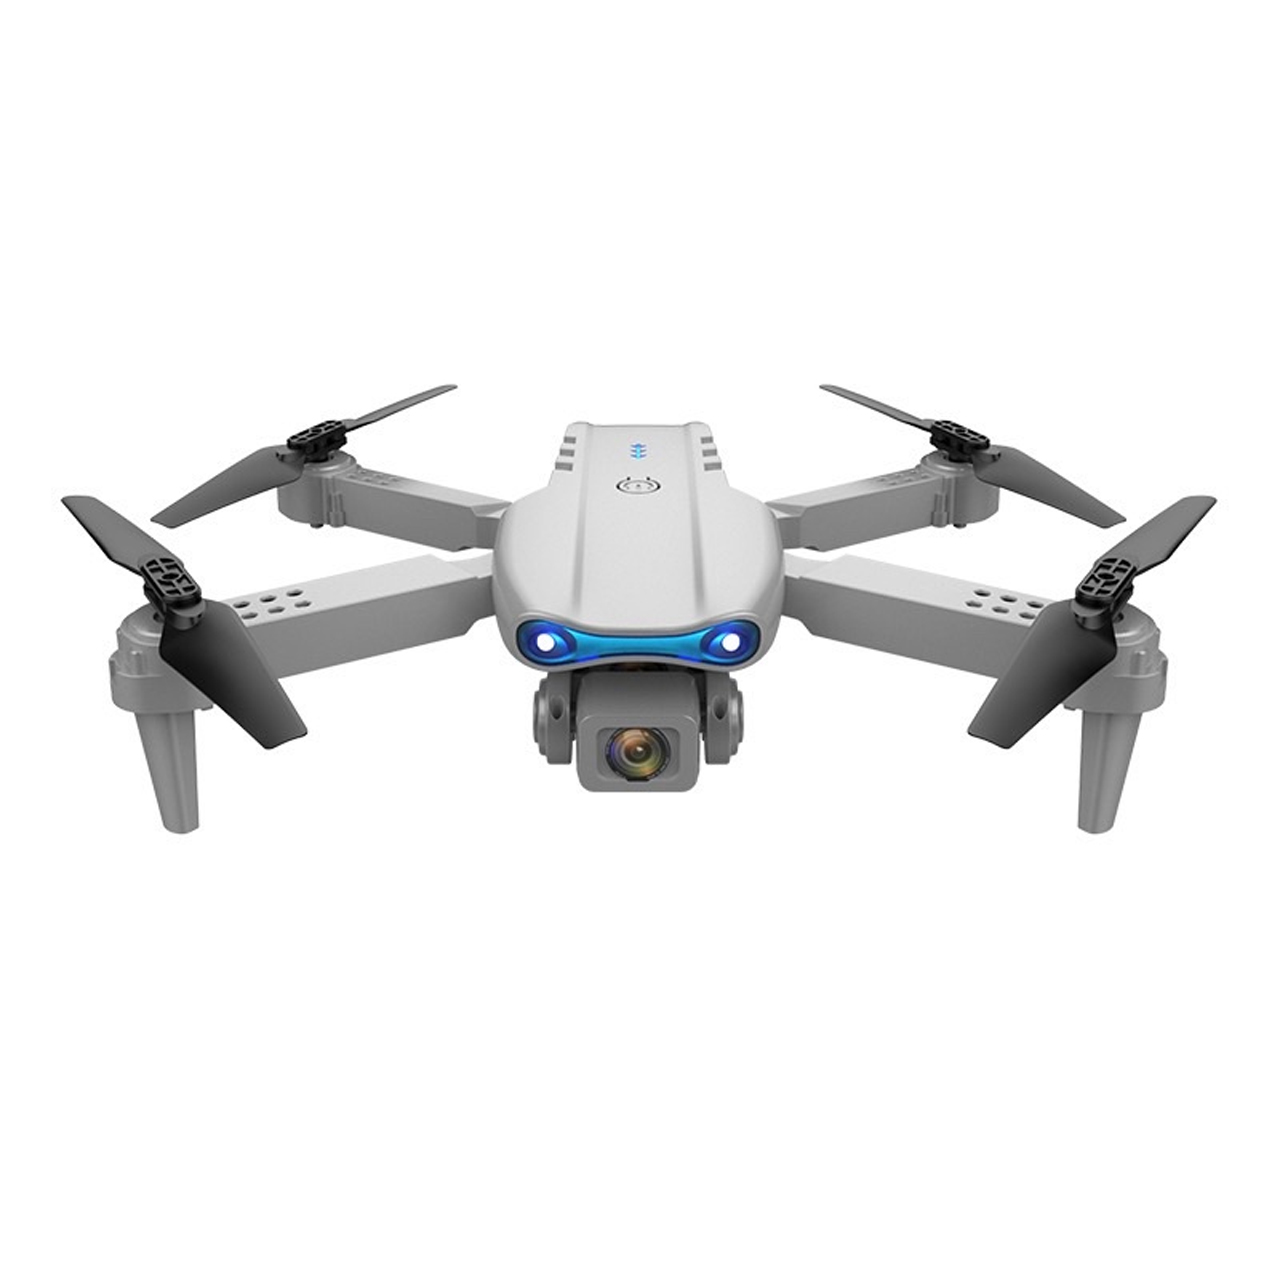 Flycam giá rẻ E99 Pro camera kép, cảm biến tránh chướng ngại vật chống va chạm máy bay điều khiển từ xa 4 cánh - thời gian bay 20 phút - hàng chính hãng